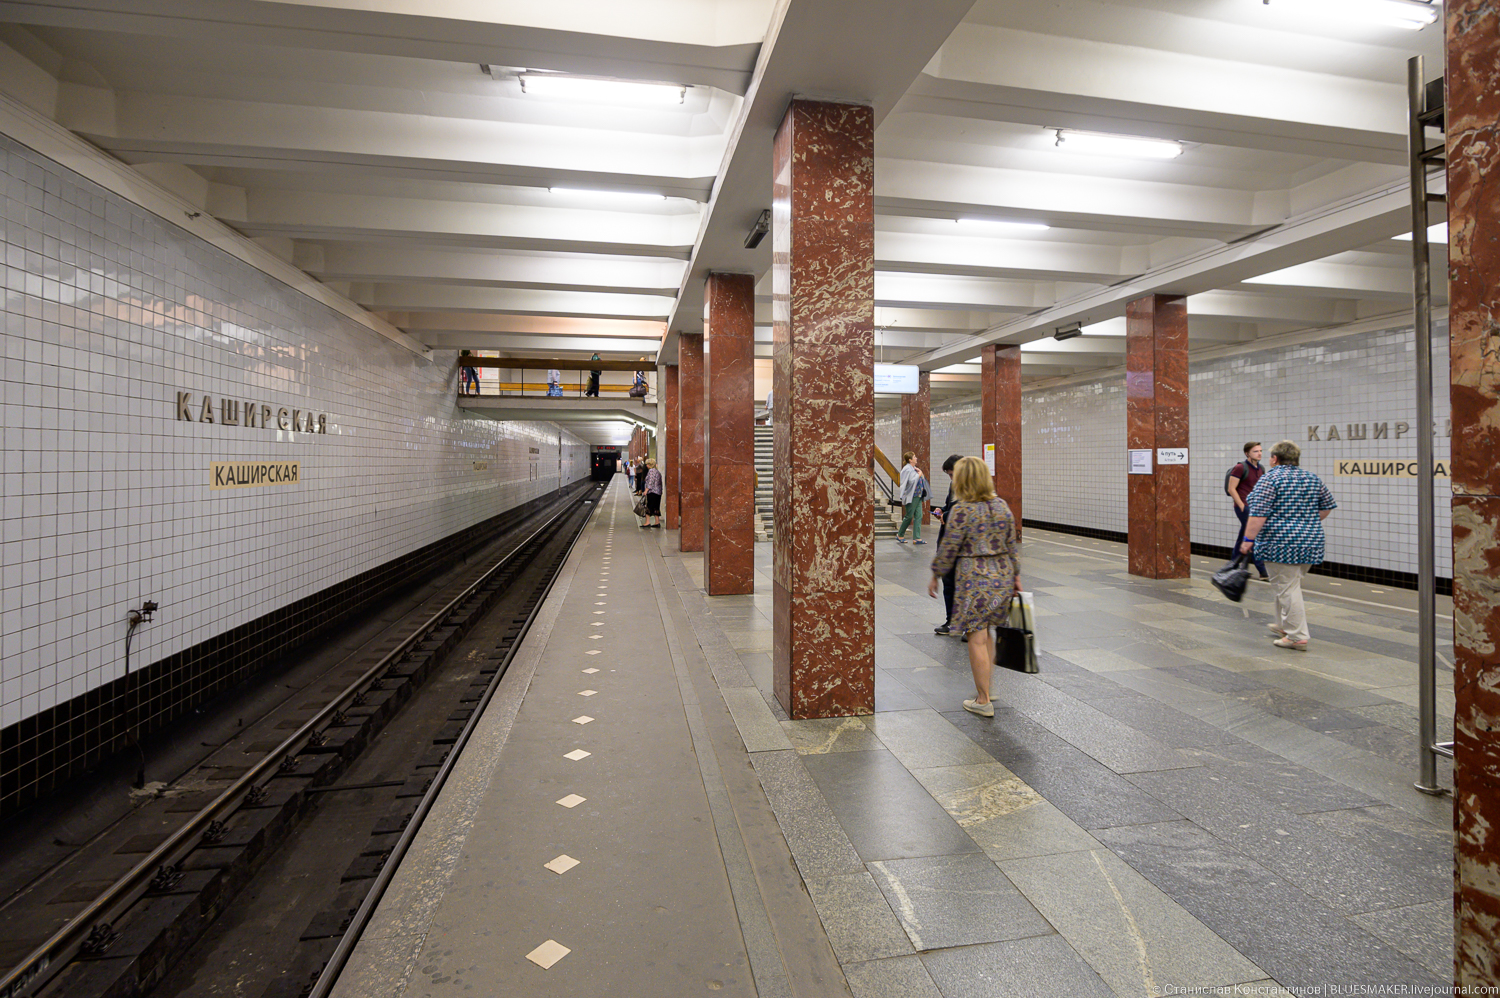 Станция метро каховская